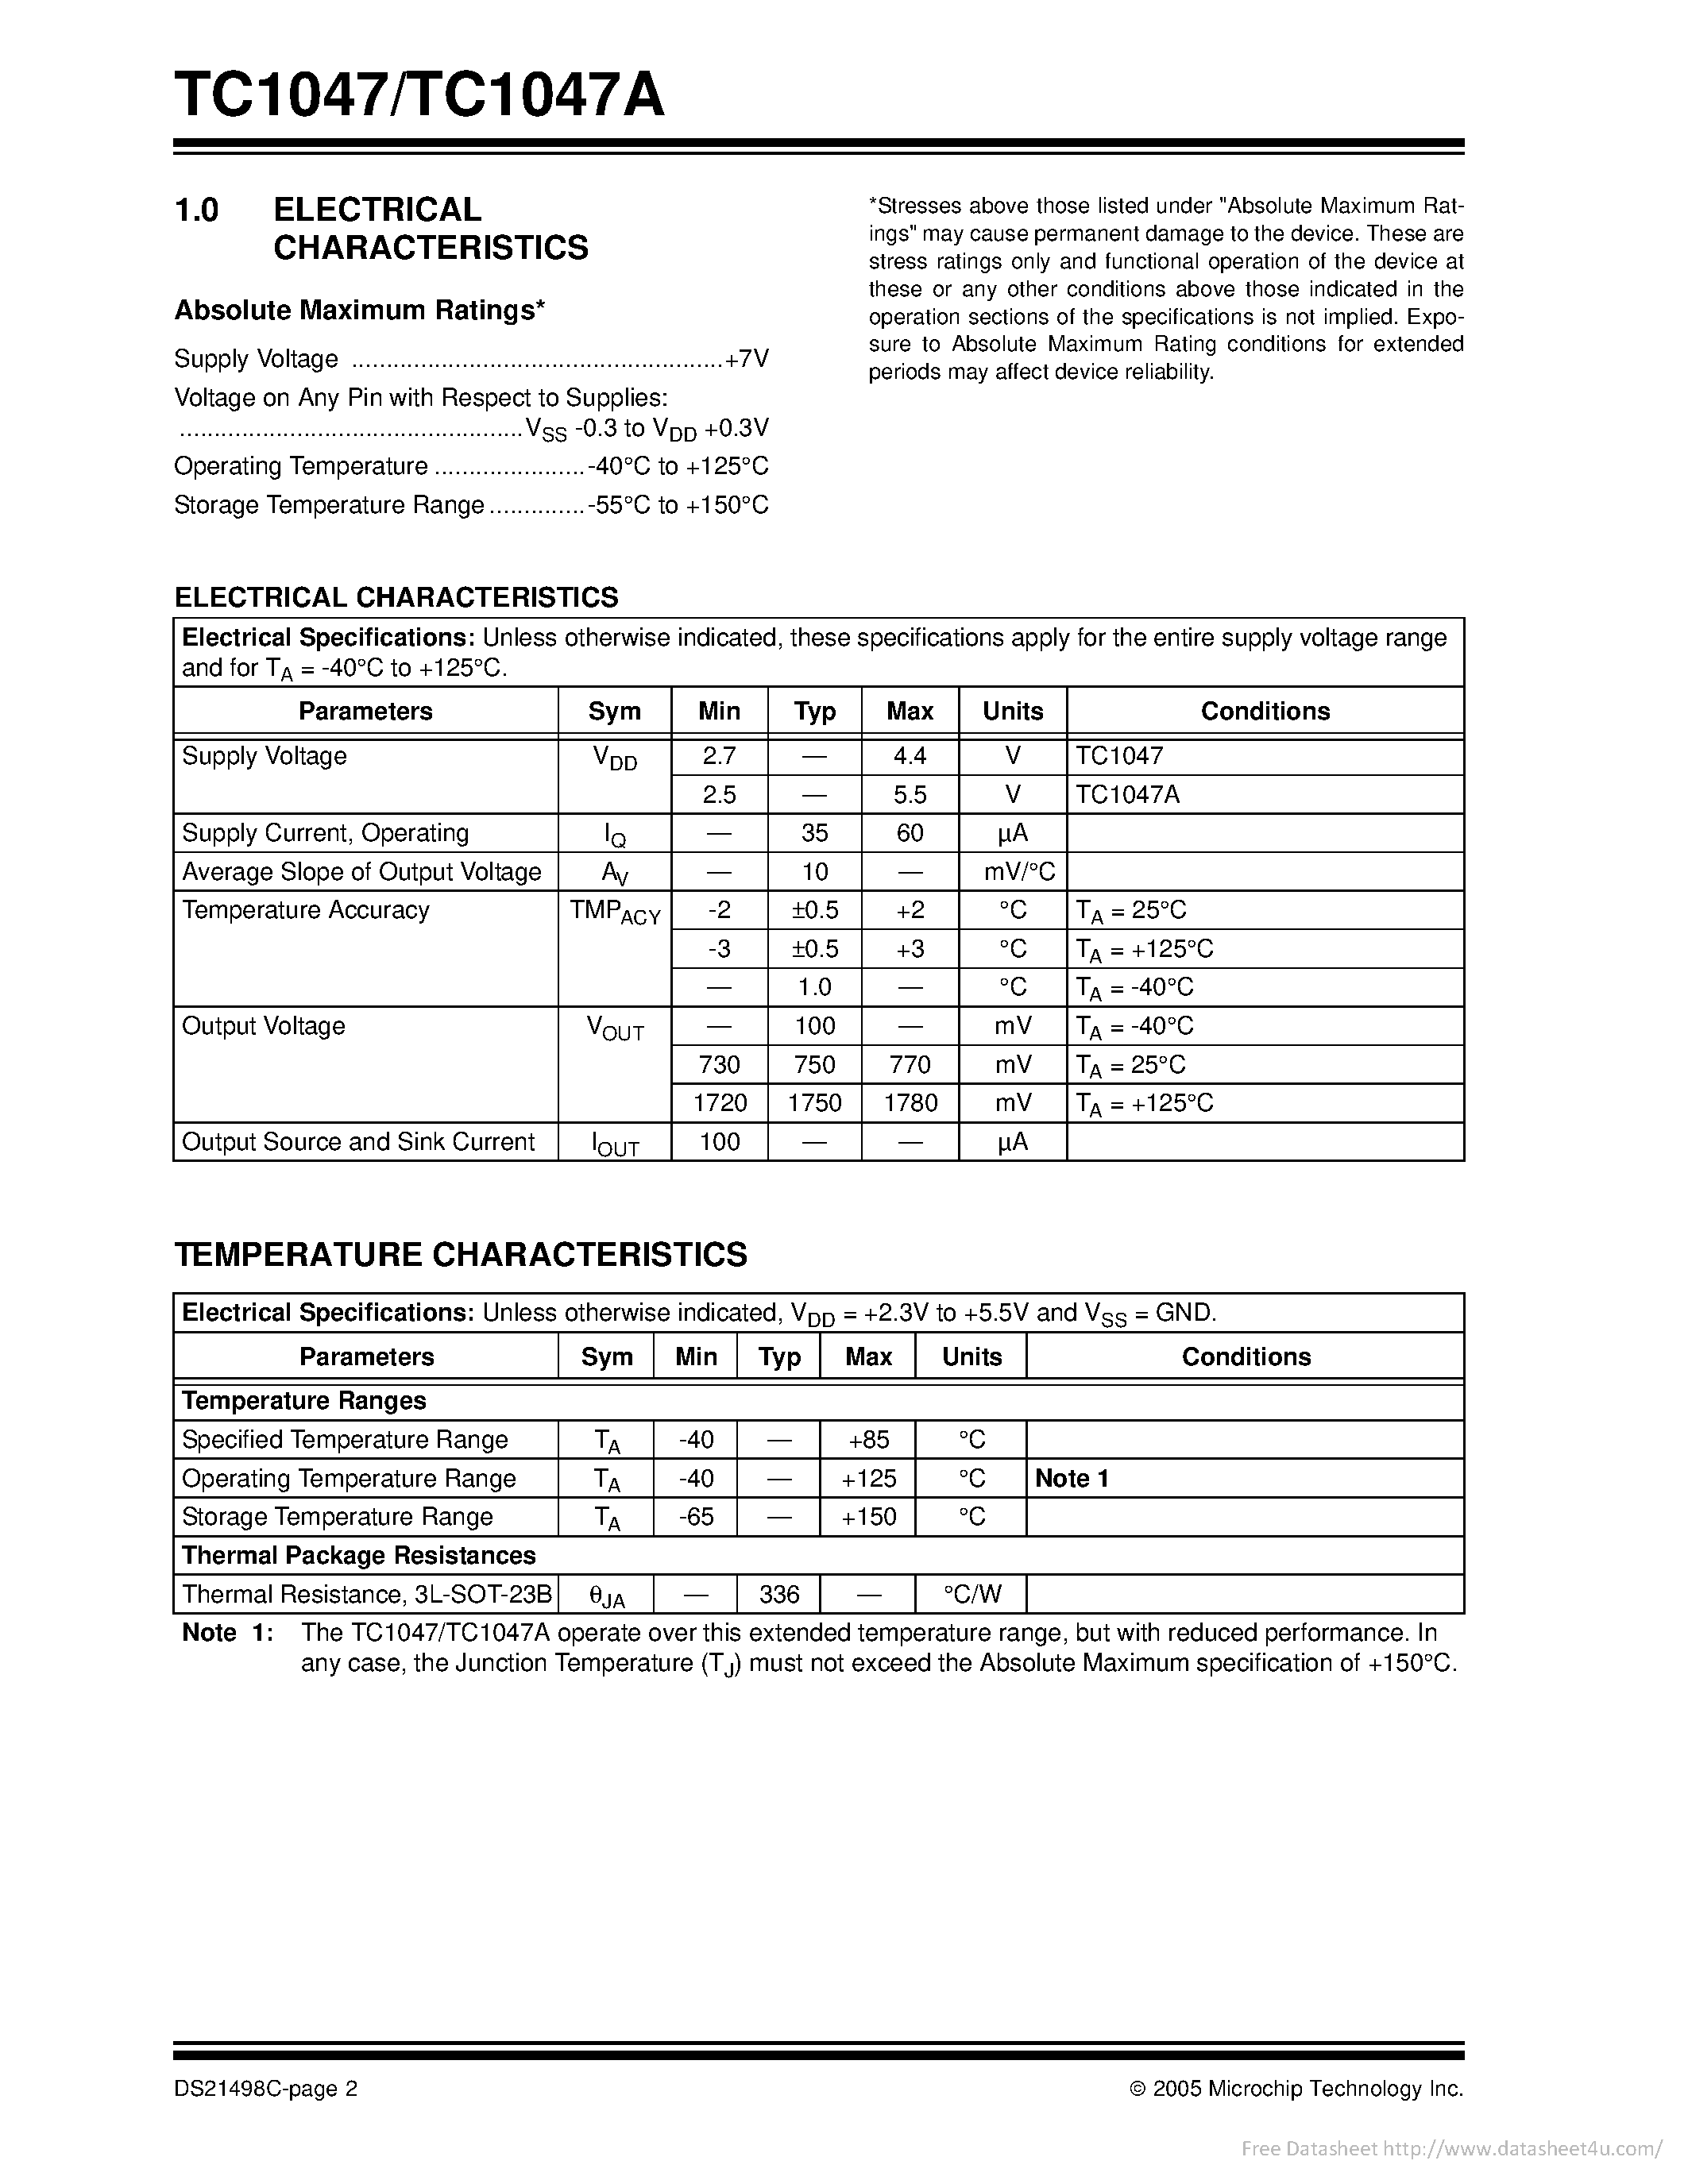 Datasheet TC1047A - page 2